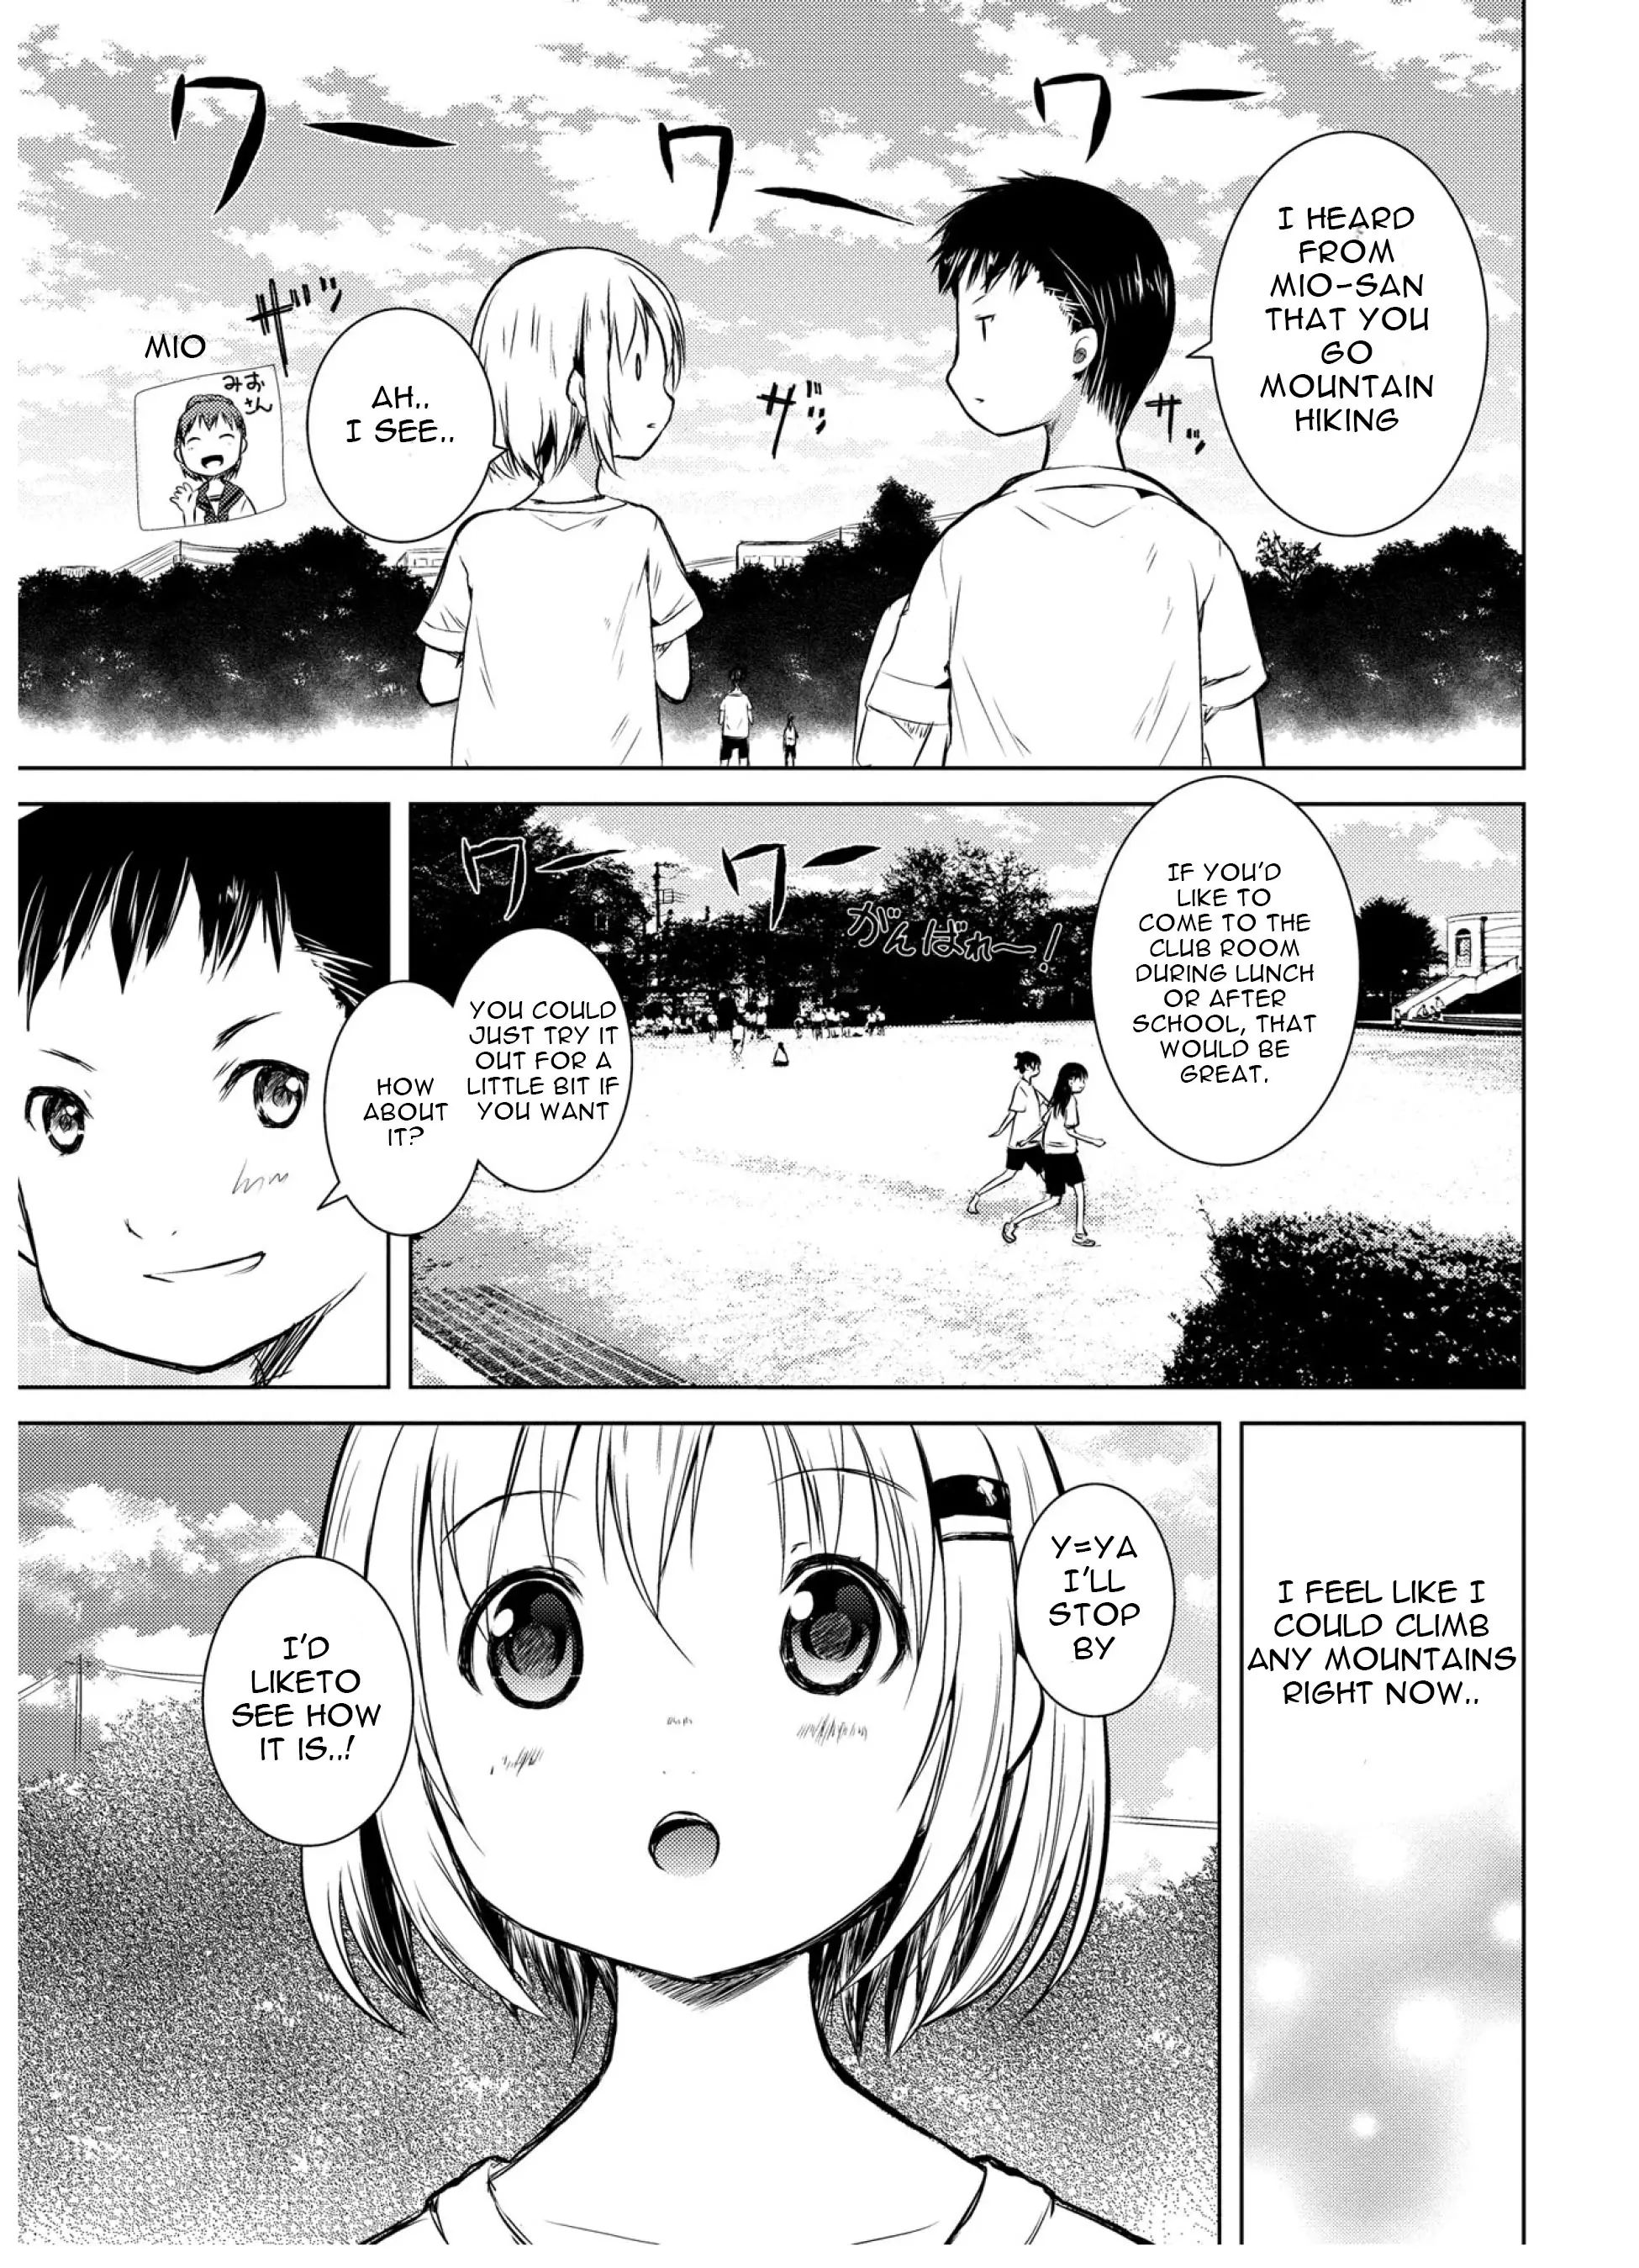 Yama No Susume - 46 page 4